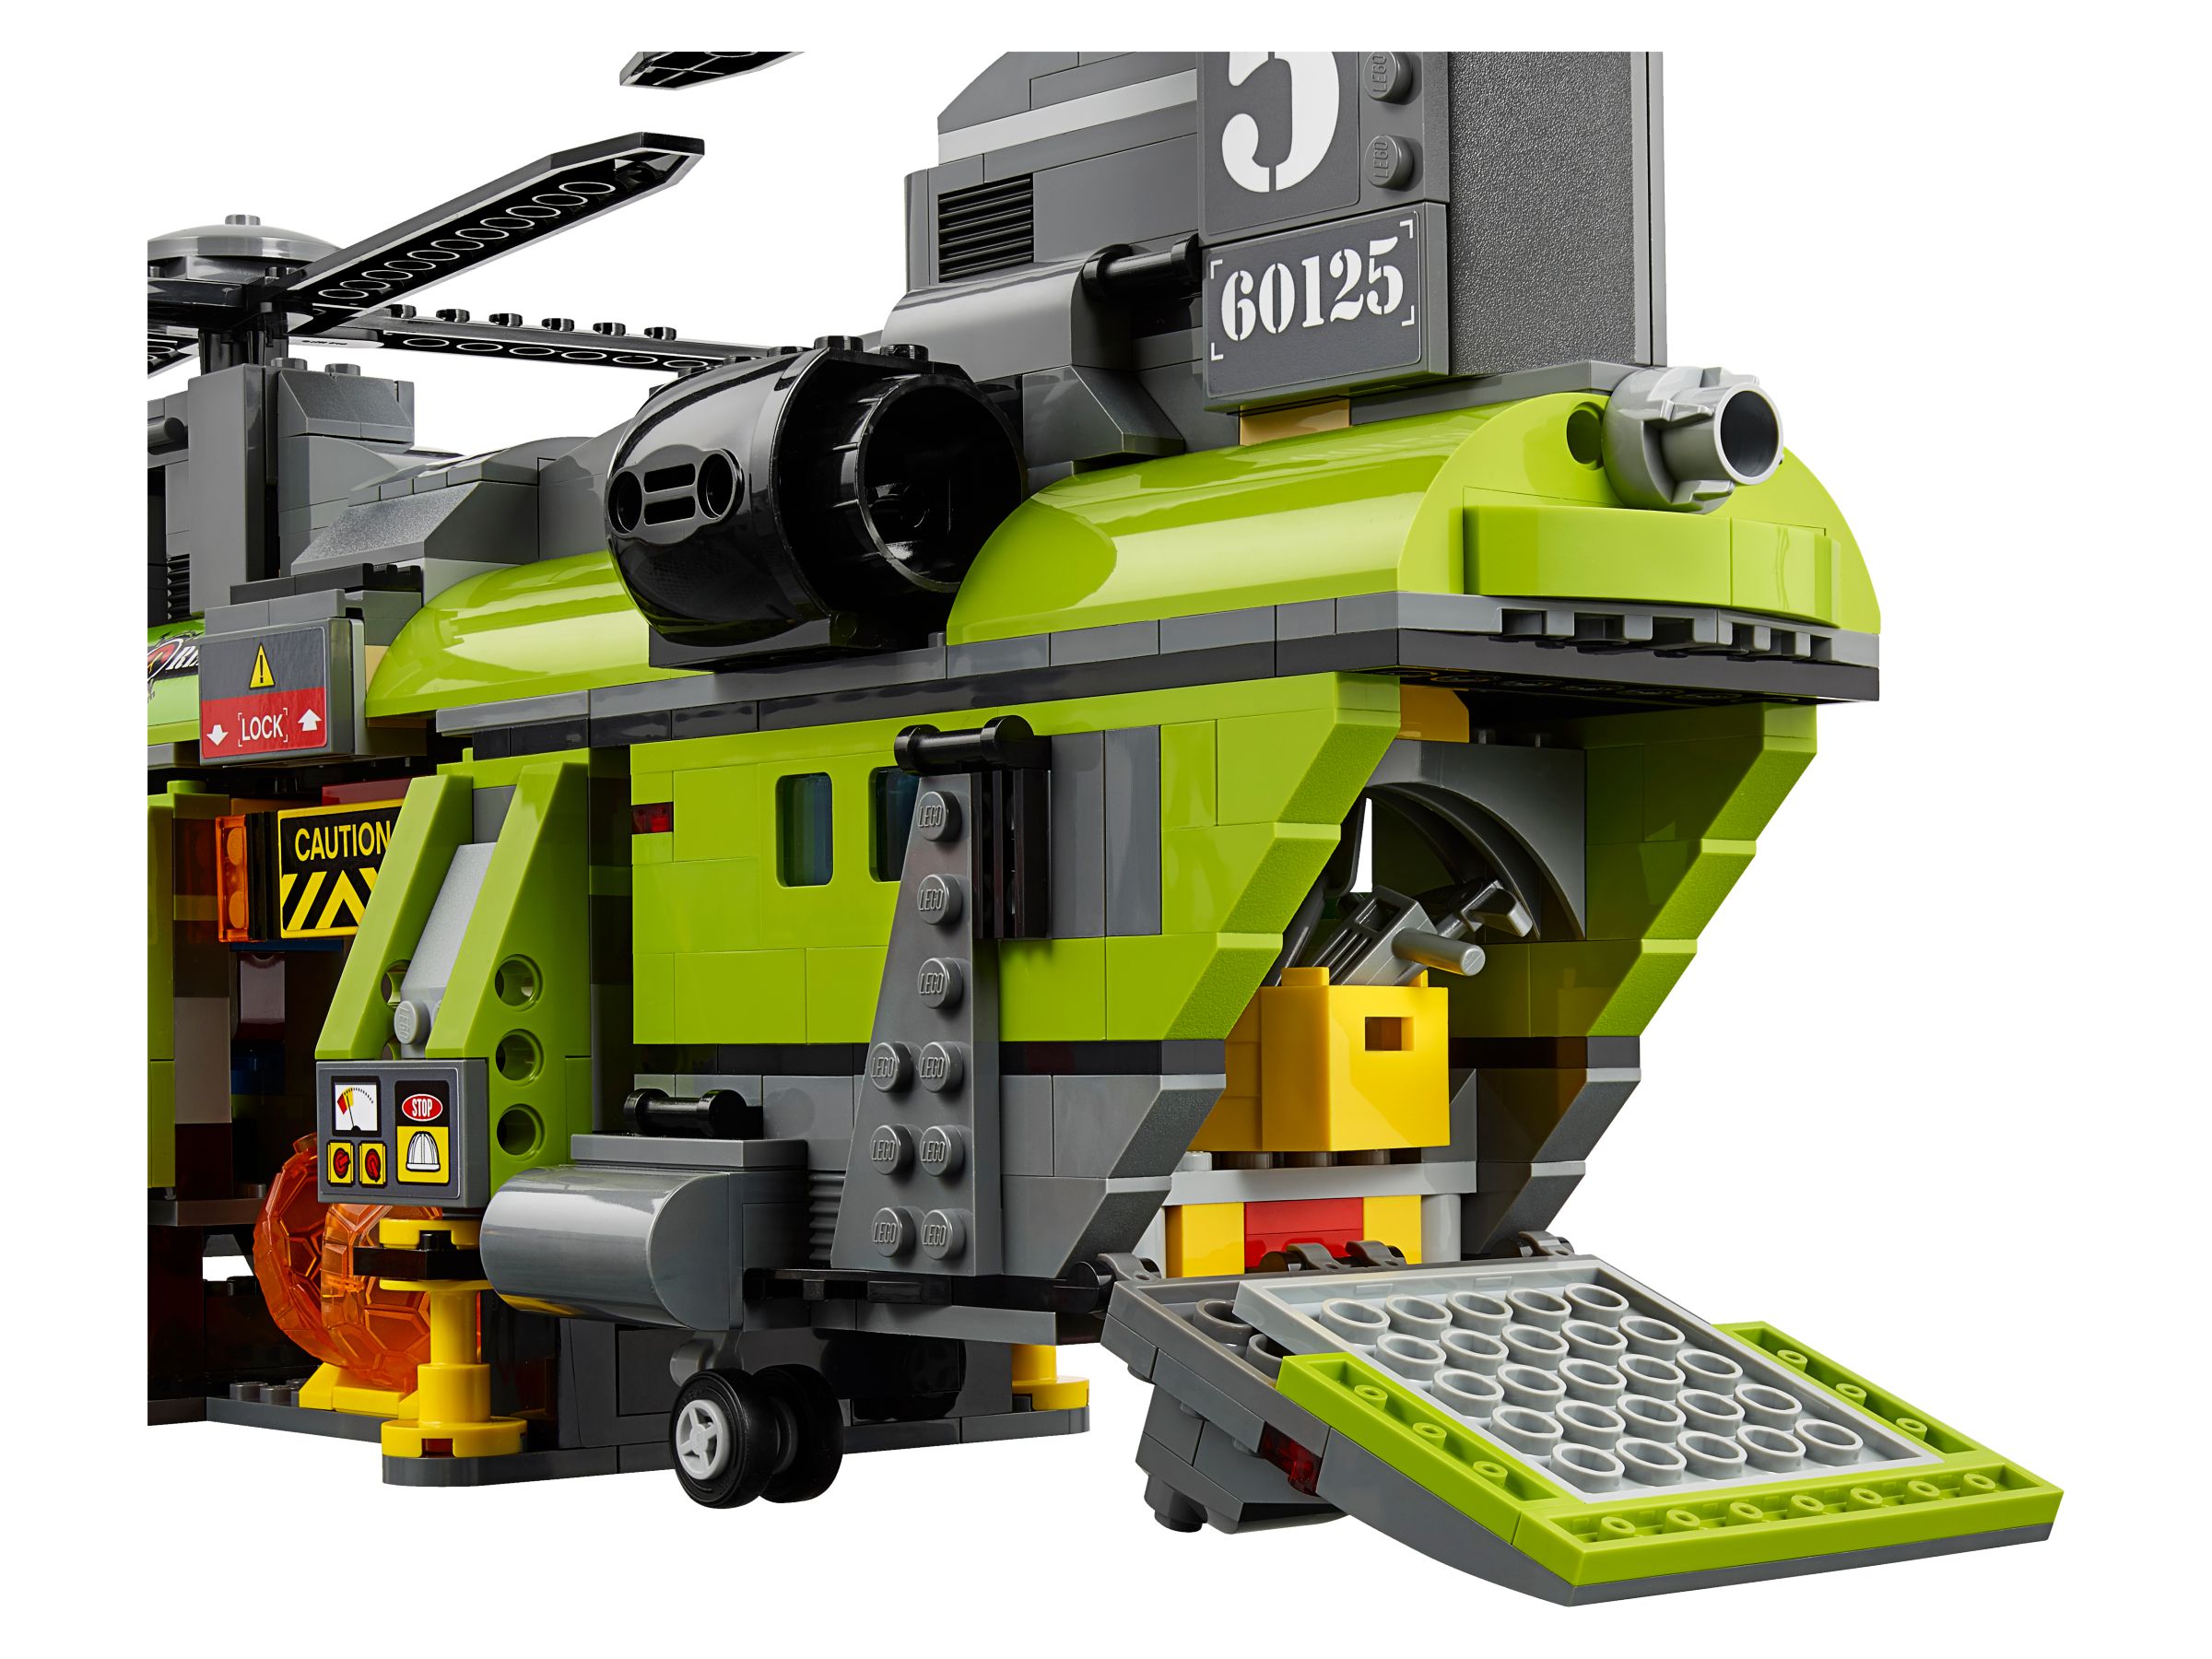 LEGO City 60125 Vulkan-Schwerlasthelikopter LEGO_60125_alt4.jpg